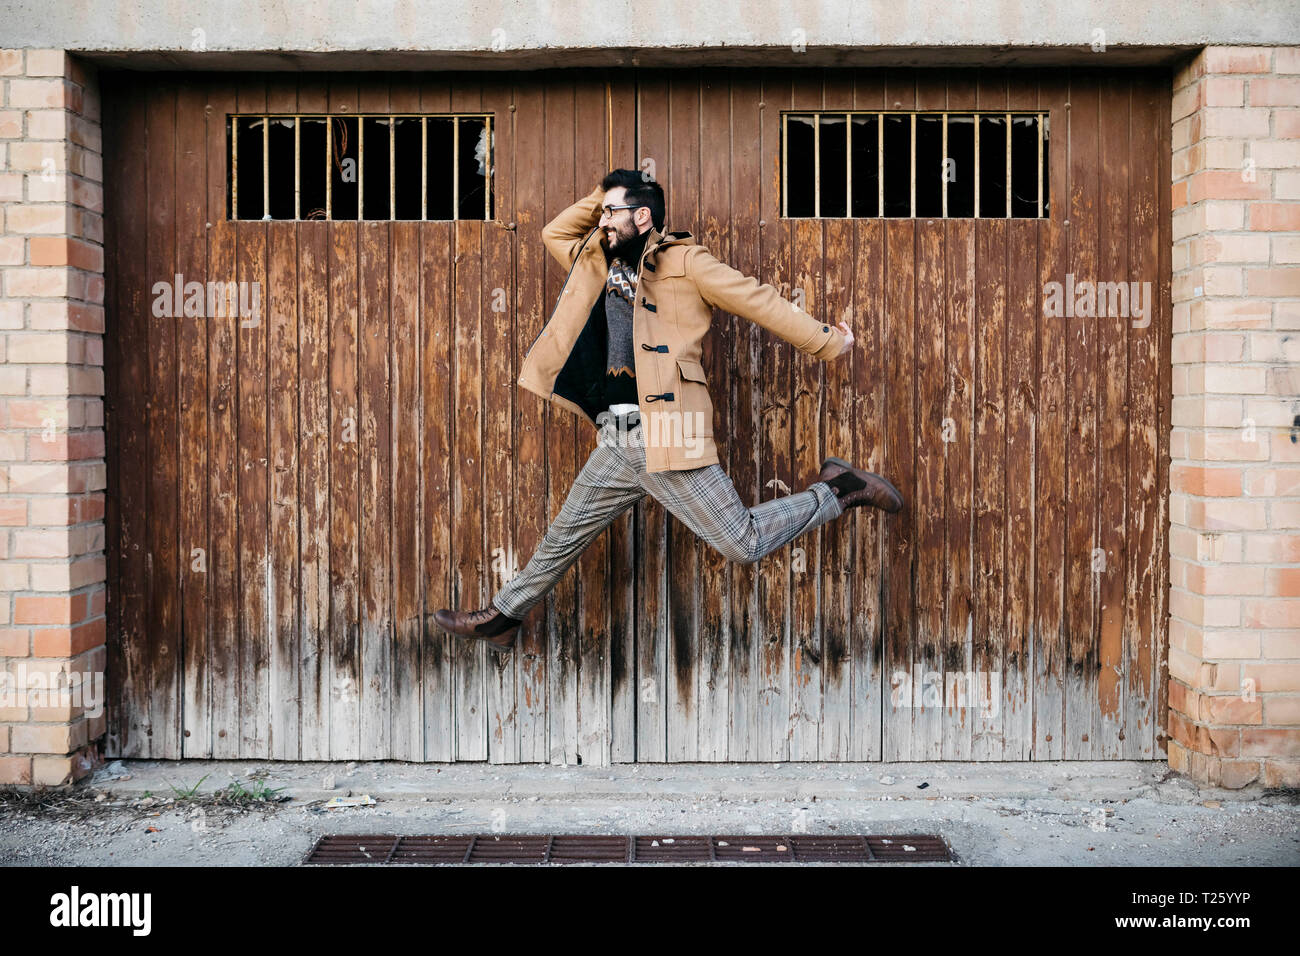 Spanien, Igualada, glücklicher Mann springen Mid-air auf heruntergekommenen hölzerne Tor Stockfoto